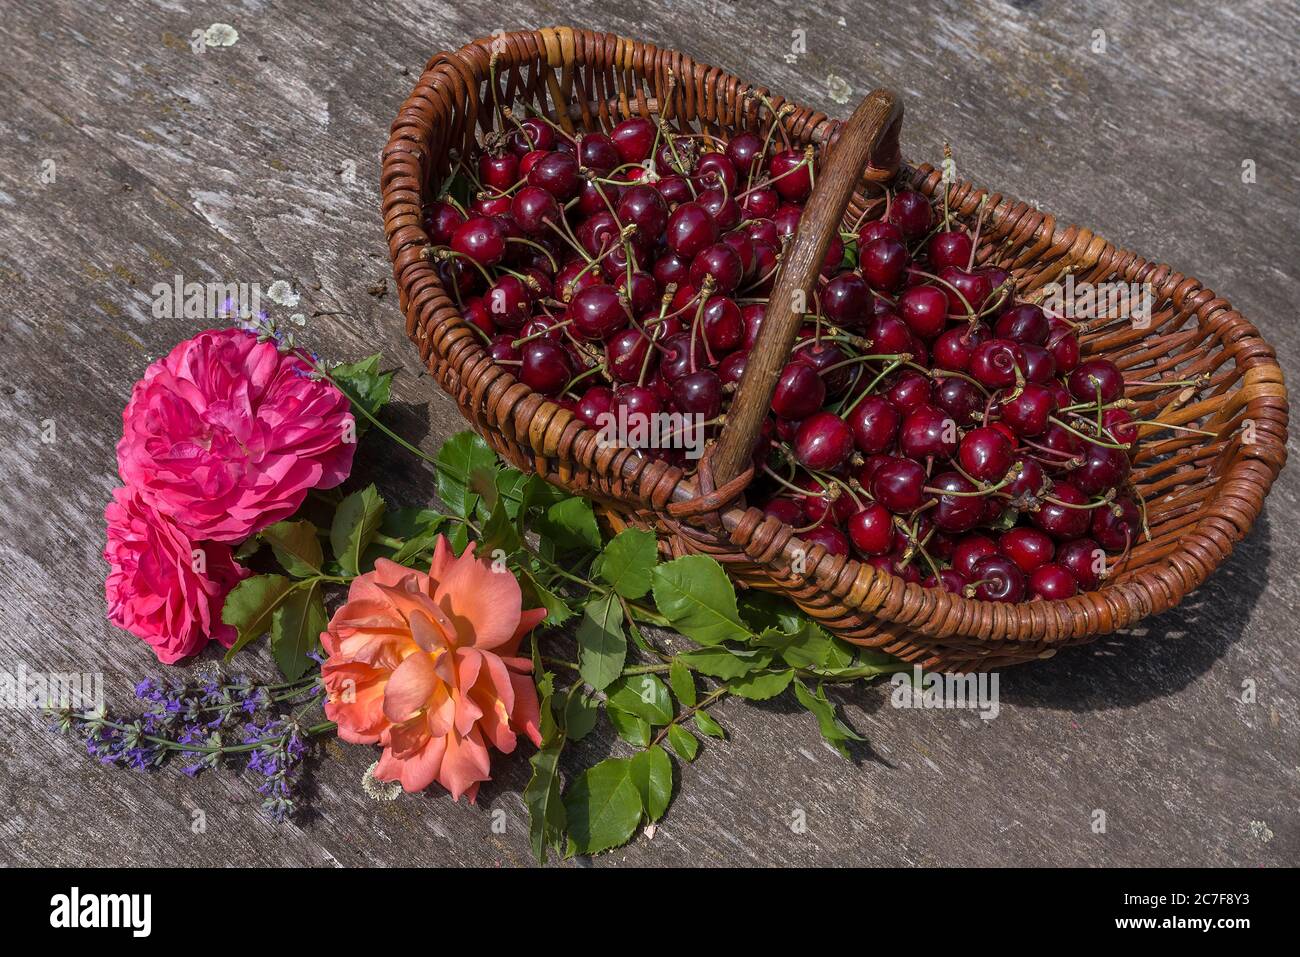 Frisch gepflückte Kirschen in einem Korb mit Rosenblättern, Bayern, Deutschland Stockfoto